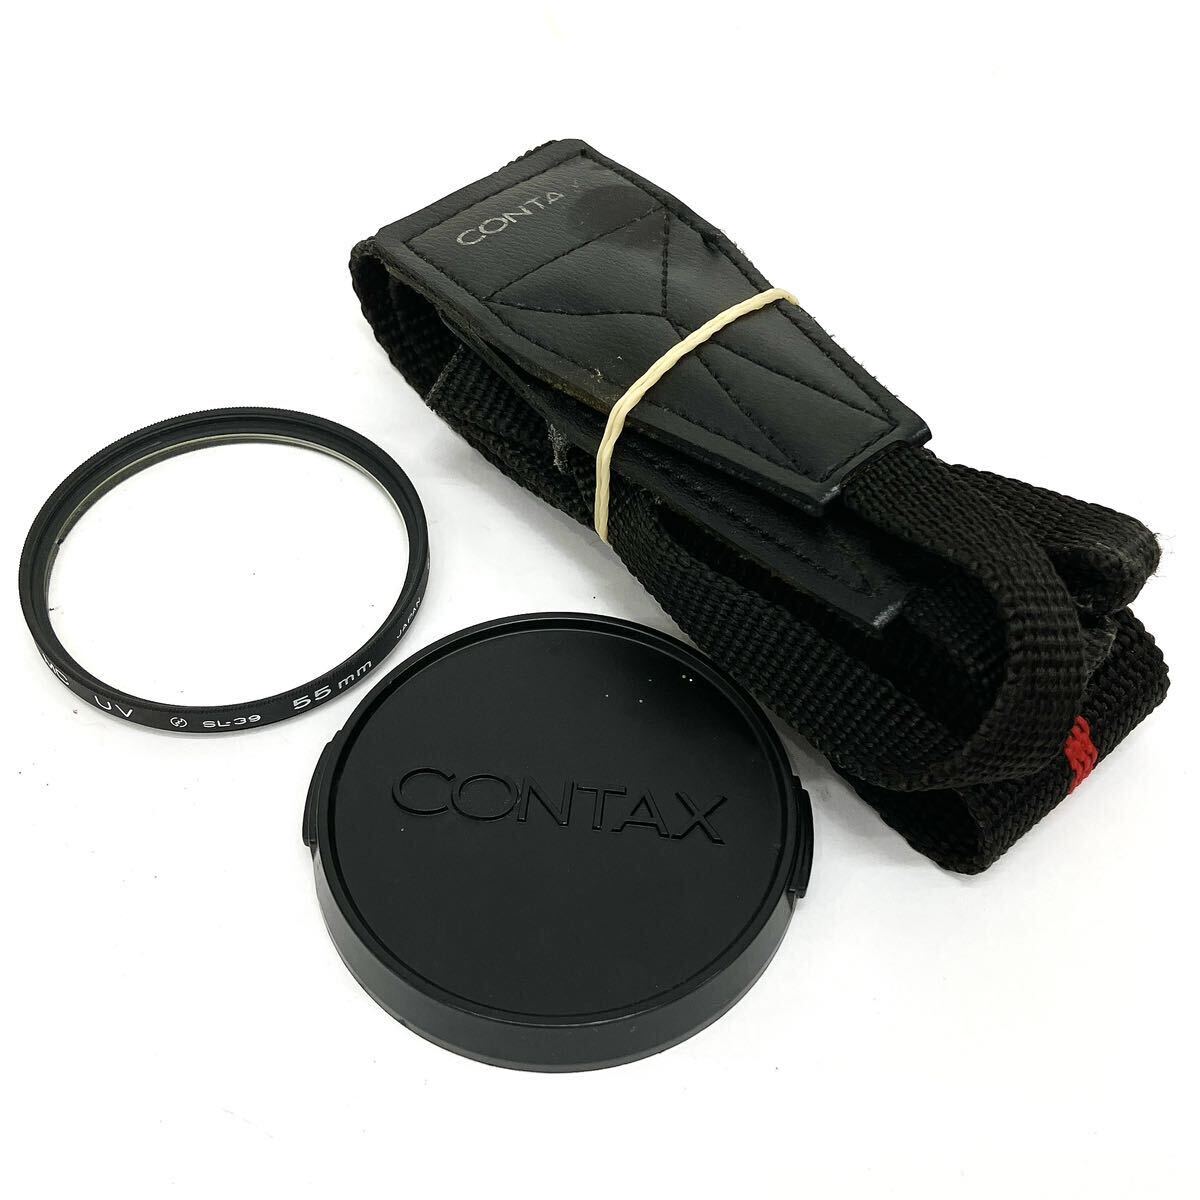 CONTAX Contax 139 QUARTZ Carl Zeiss Distagon 2.8/28 T* manual focus lens single‐lens reflex camera alp river 0415